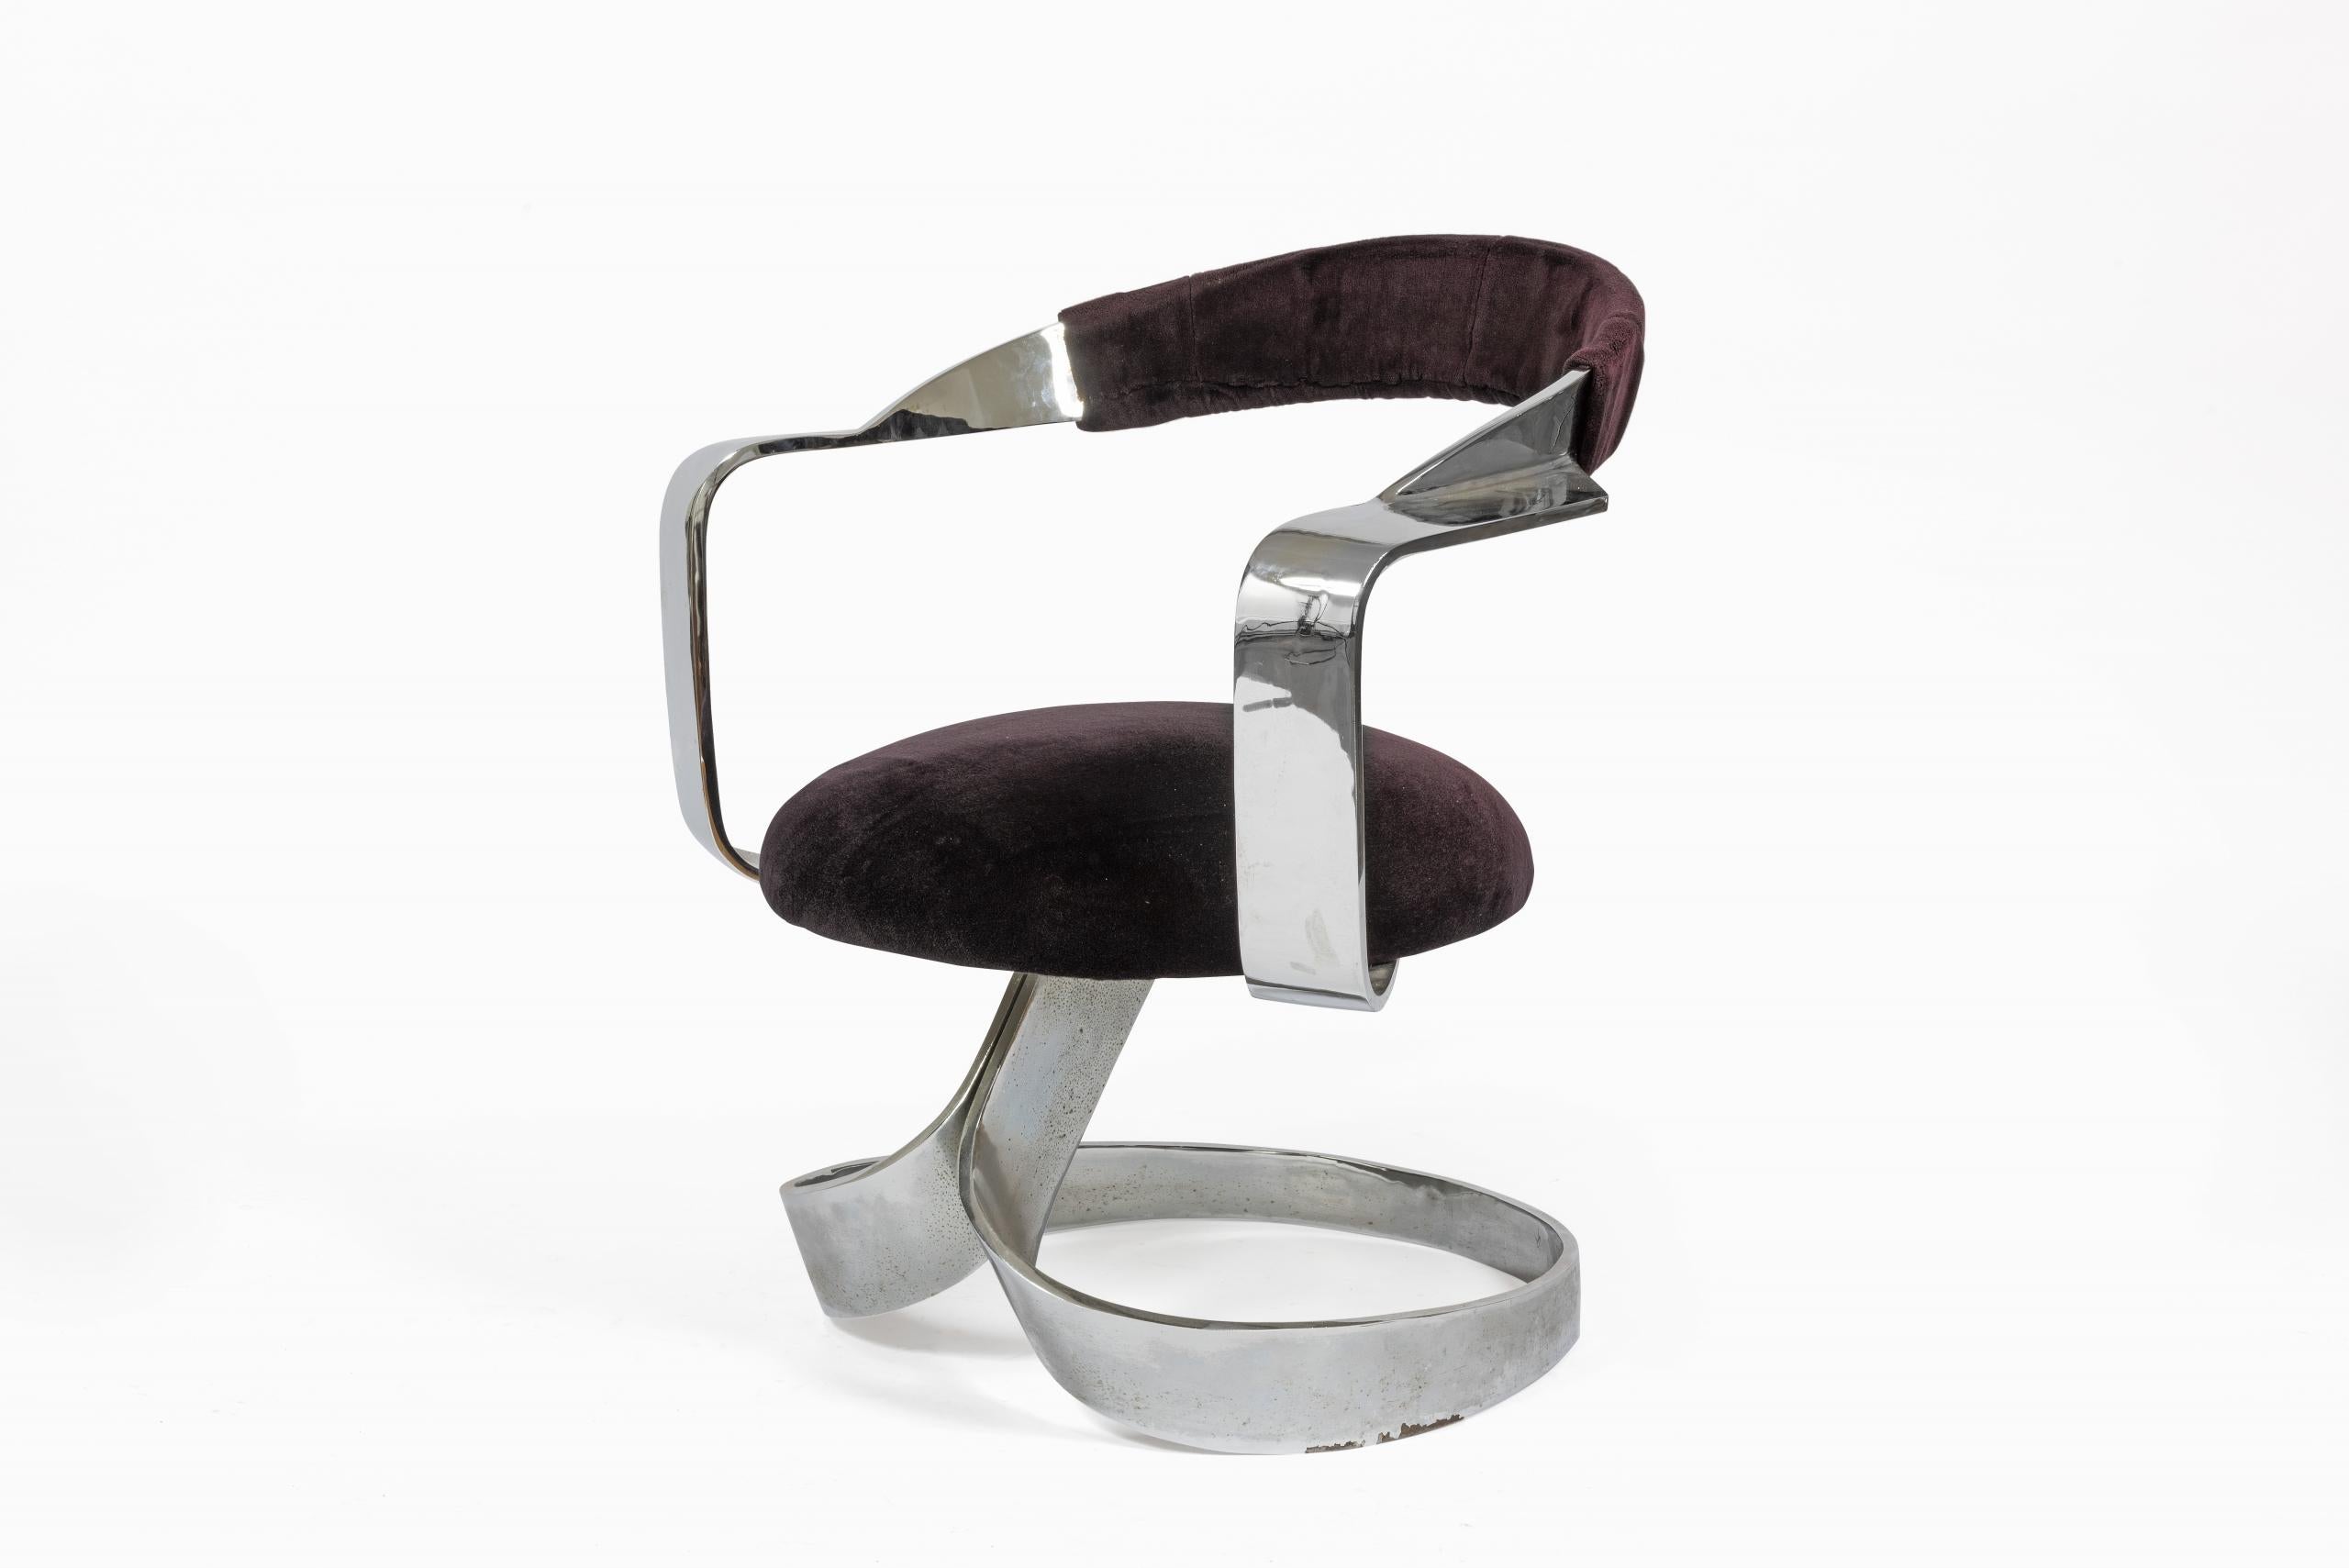 Ensemble de 4 chaises et une table à manger en acier inoxydable, Design de 1968, édition New Look Española SA.

Les chaises sont en velours et le musée du Design de Barcelone en conserve une du même modèle, MADB 135827. Traces d’usure. Dimensions